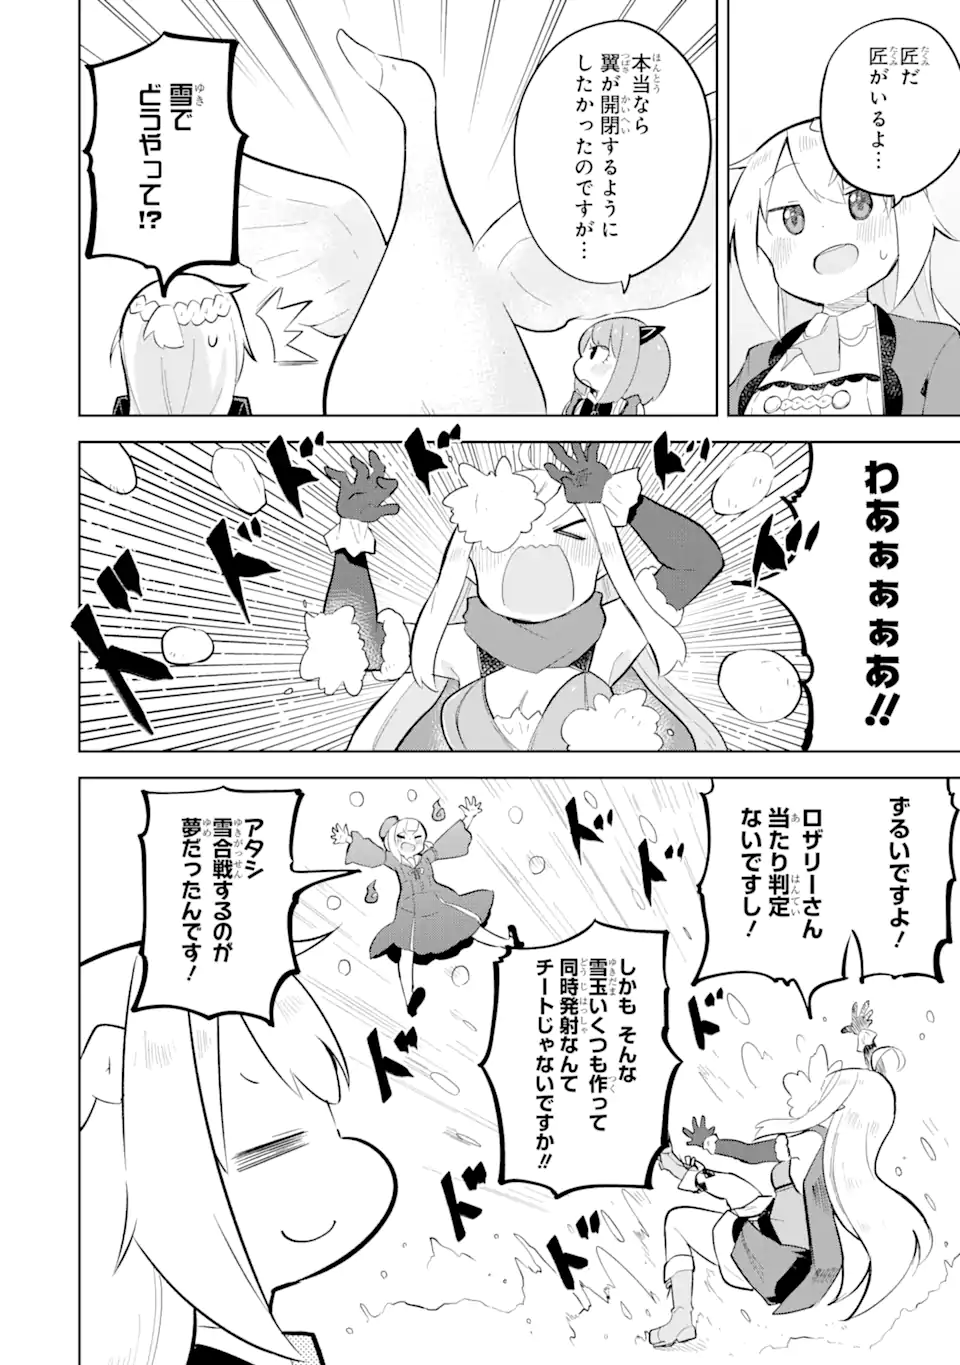 Slime Taoshite 300-nen, Shiranai Uchi ni Level Max ni Nattemashita - Chapter 76.1 - Page 2